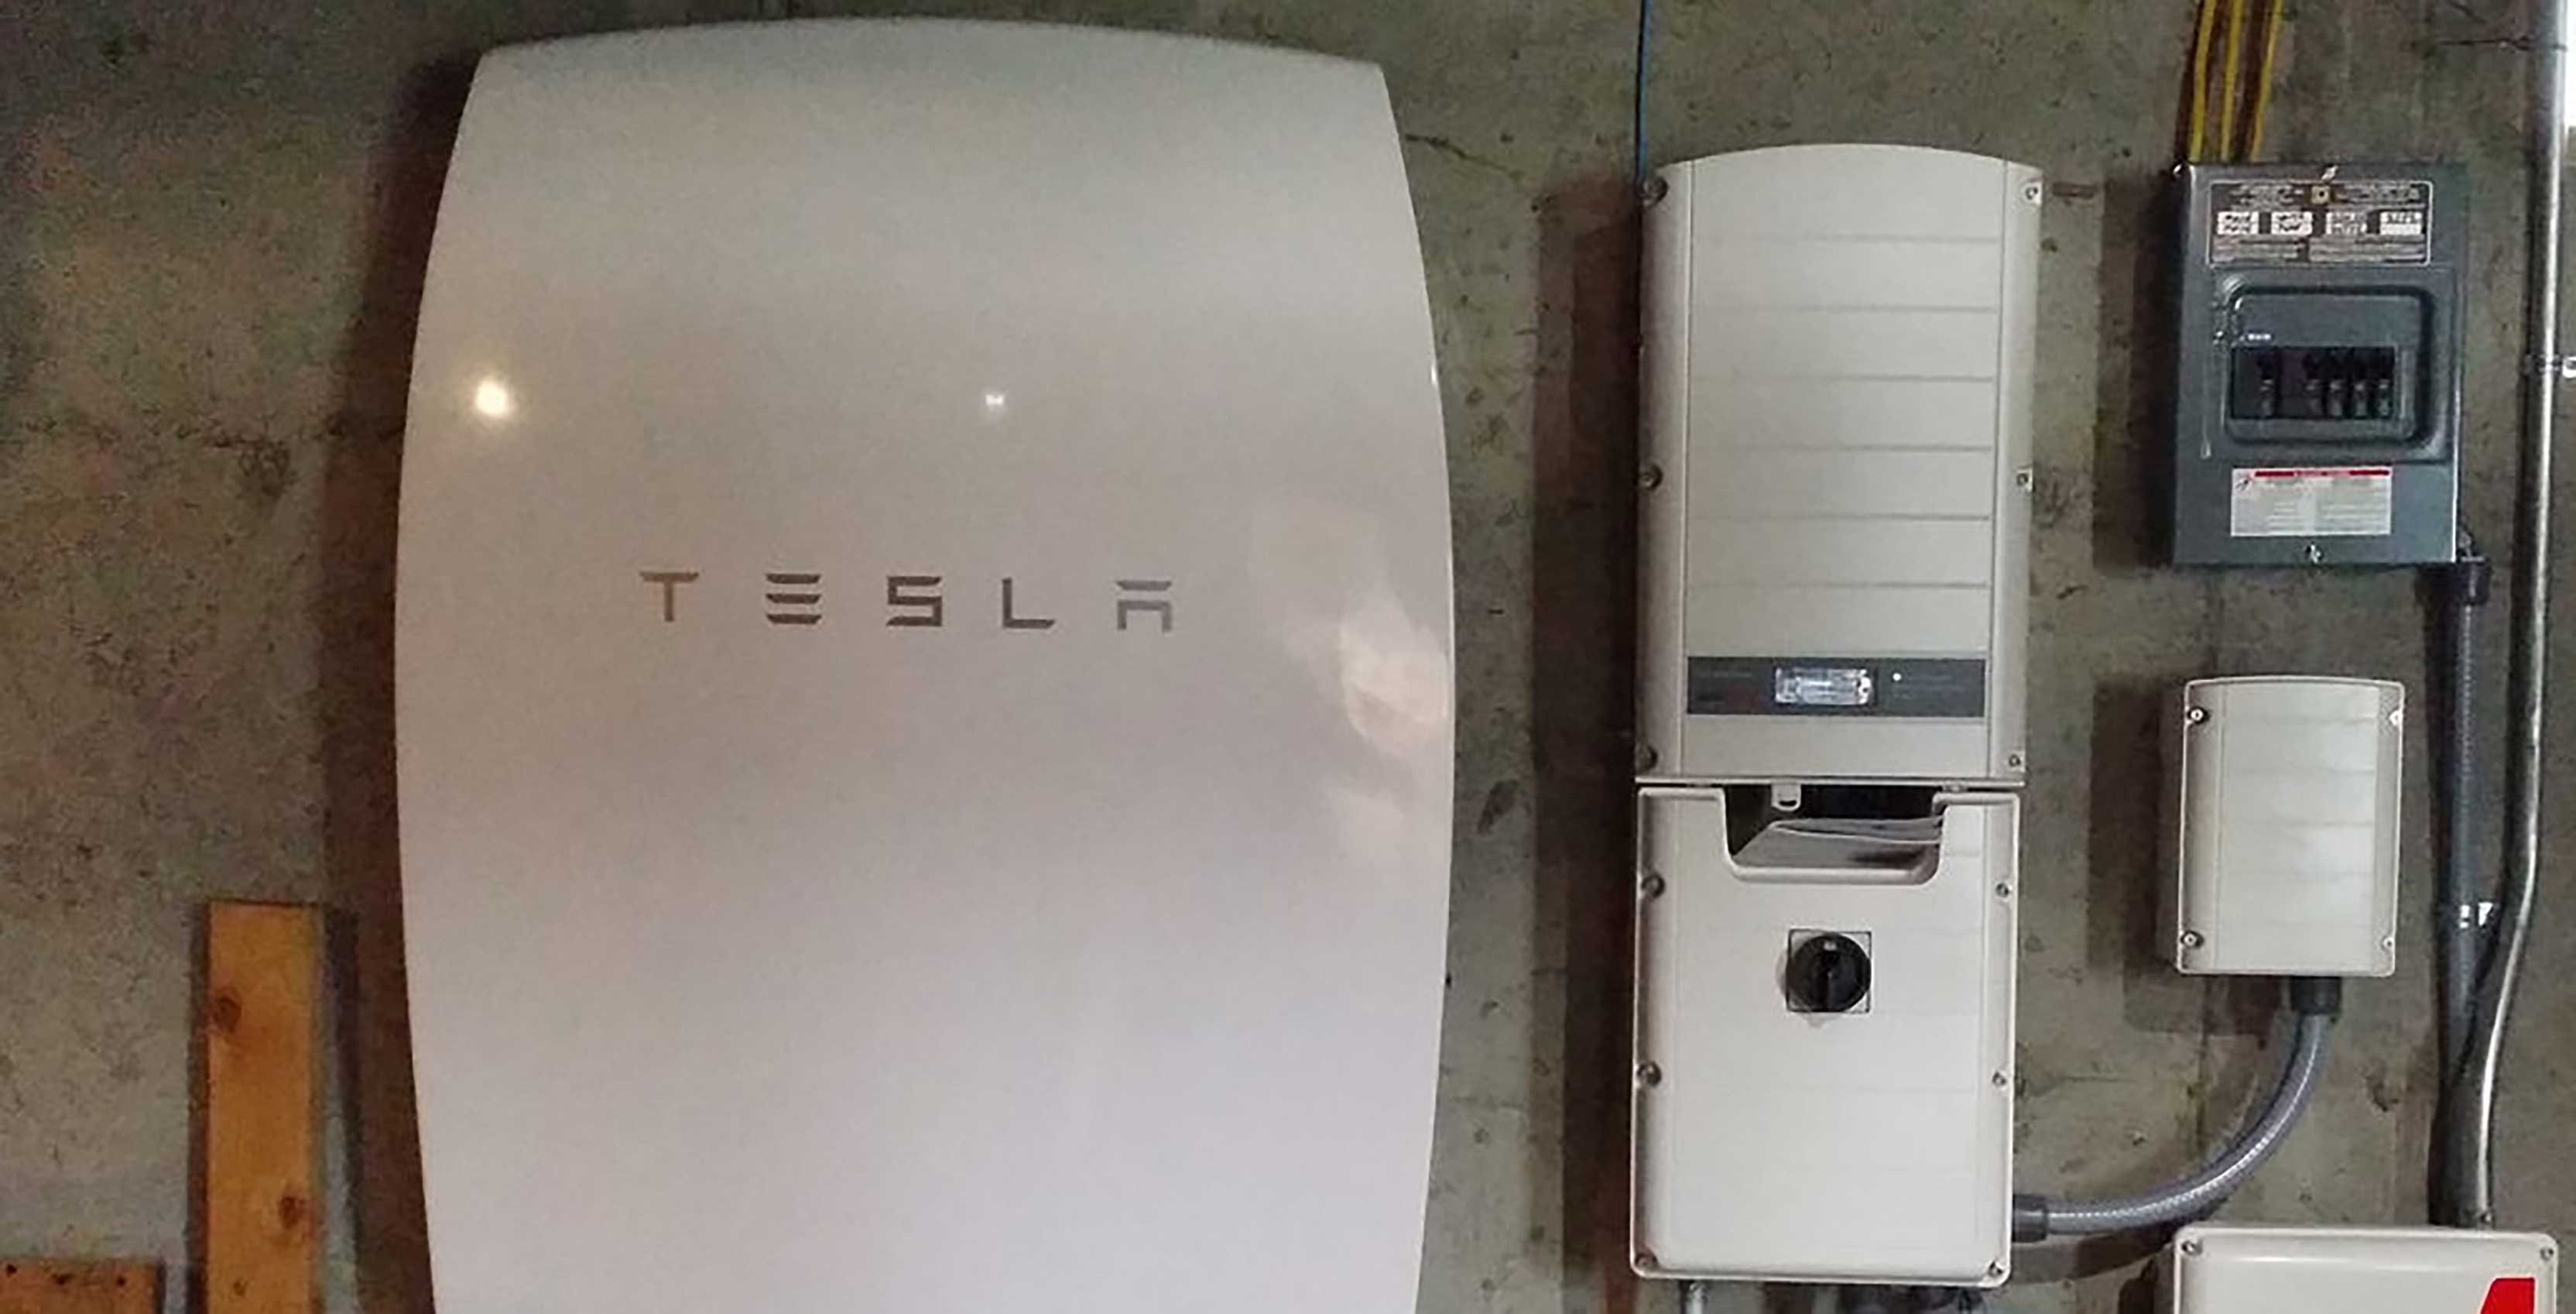 Tesla Powerwall in home